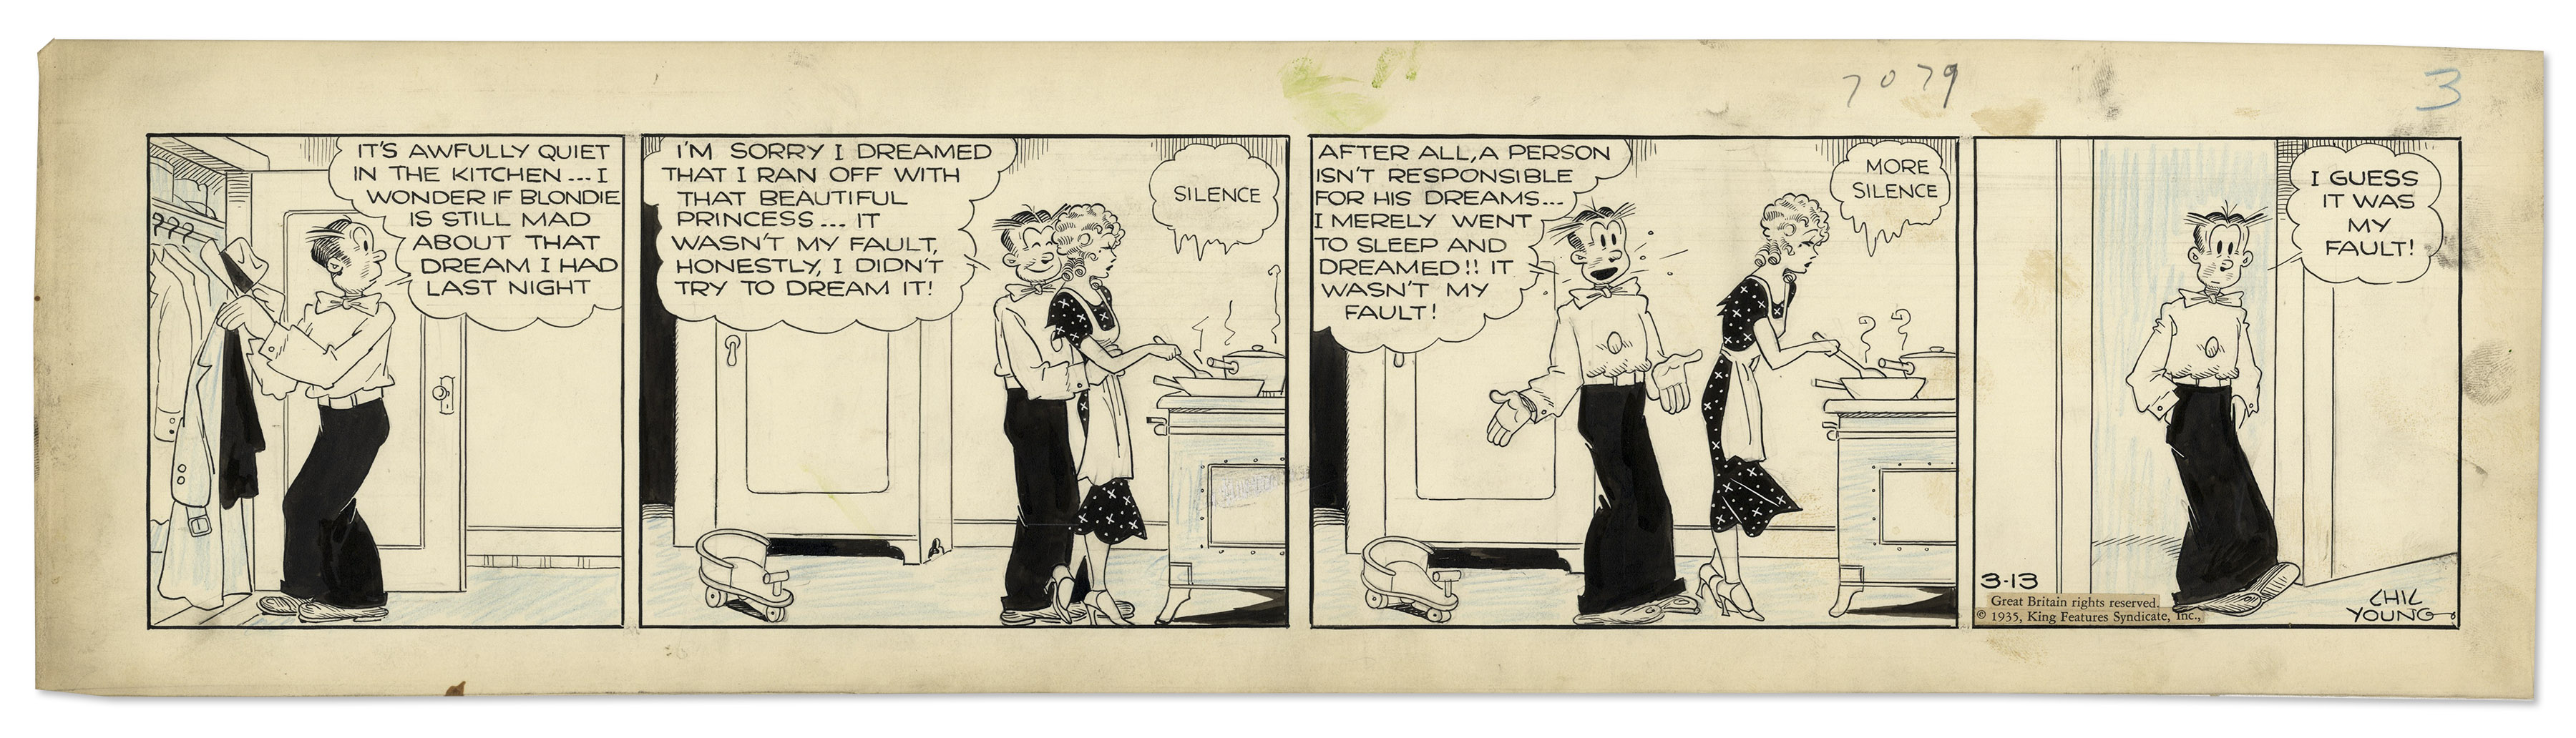 Blondie 1935 Comic Strip